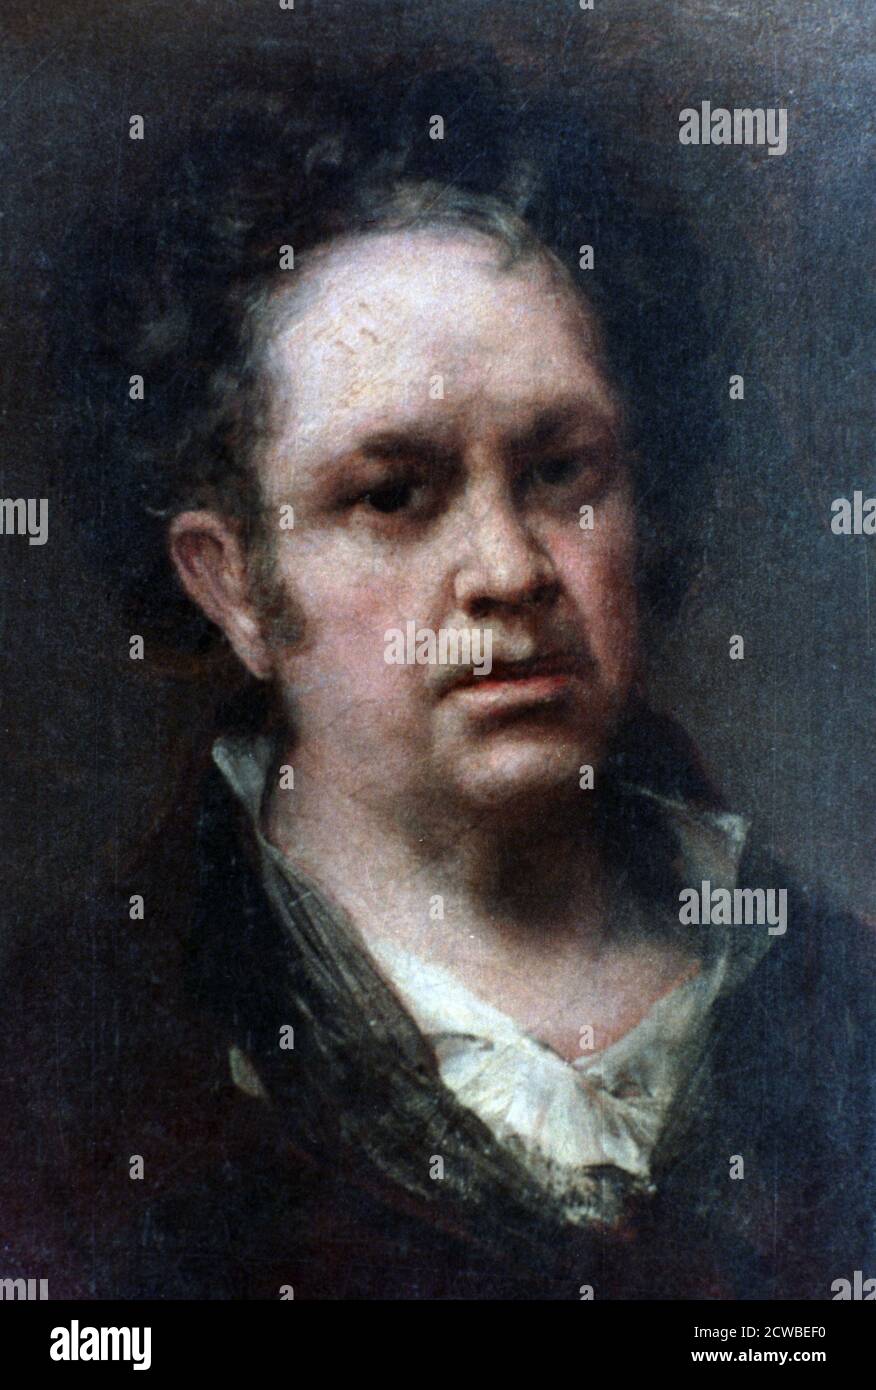 Autoportrait', 1815. Artiste: Francisco Goya. Francisco Goya (1746-1828) était un artiste espagnol dont les peintures, dessins et gravures reflétaient des bouleversements historiques contemporains et influençaient d'importants peintres des XIXe et XXe siècles. Banque D'Images